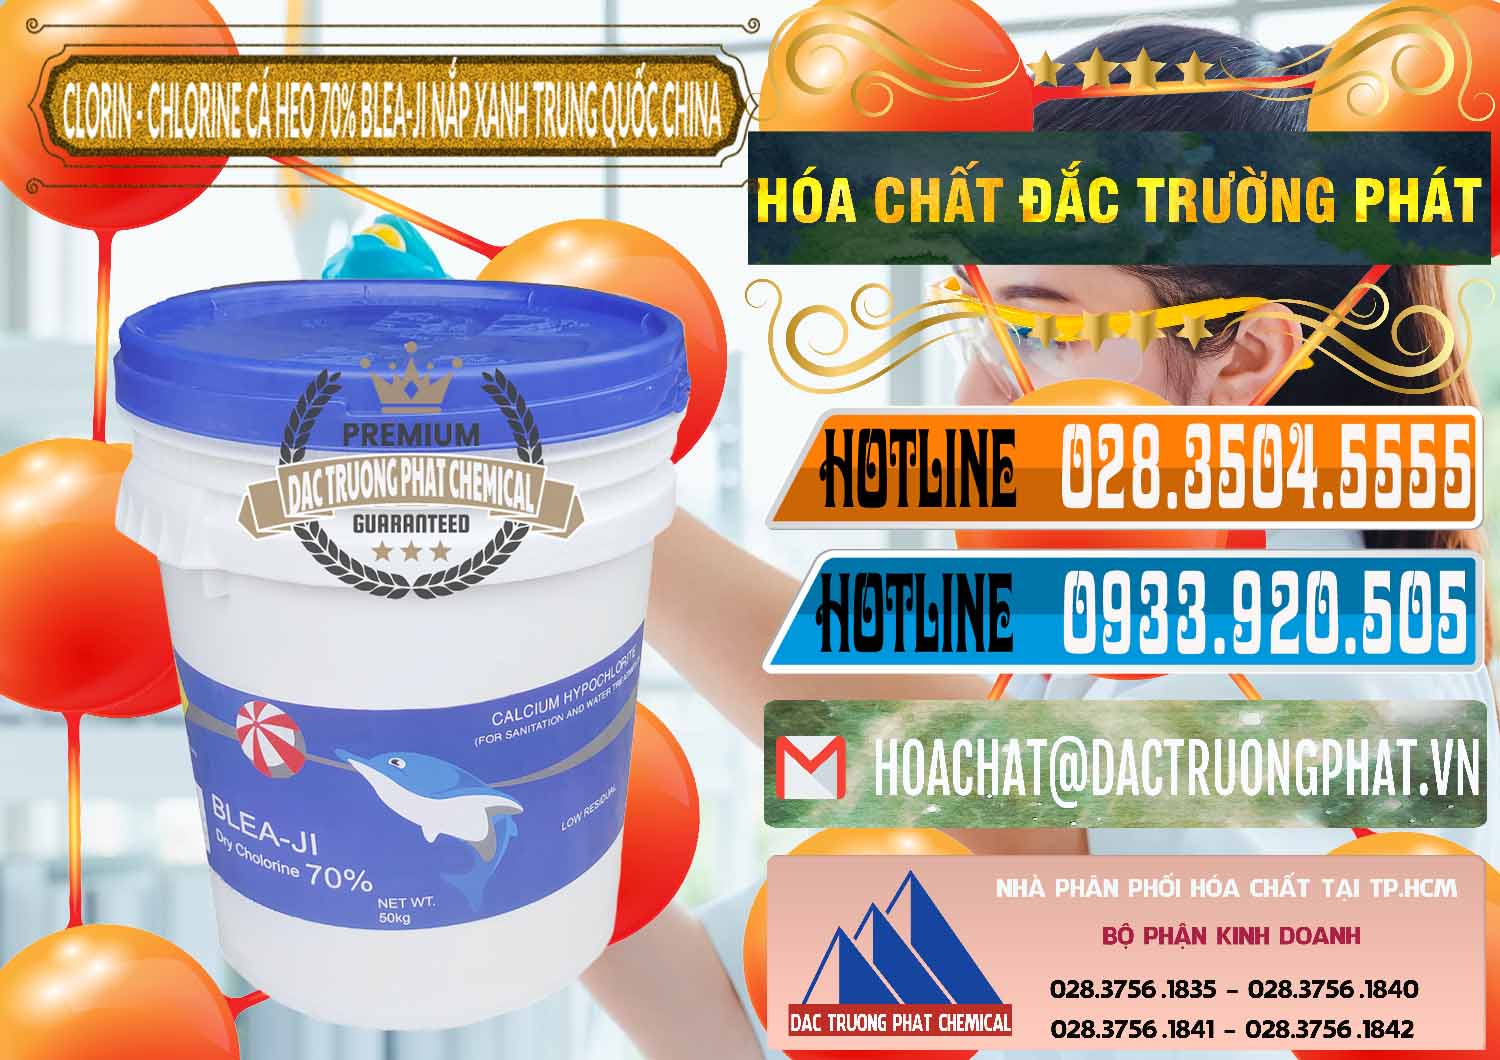 Nơi bán và cung cấp Clorin - Chlorine Cá Heo 70% Cá Heo Blea-Ji Thùng Tròn Nắp Xanh Trung Quốc China - 0208 - Cung cấp ( bán ) hóa chất tại TP.HCM - stmp.net